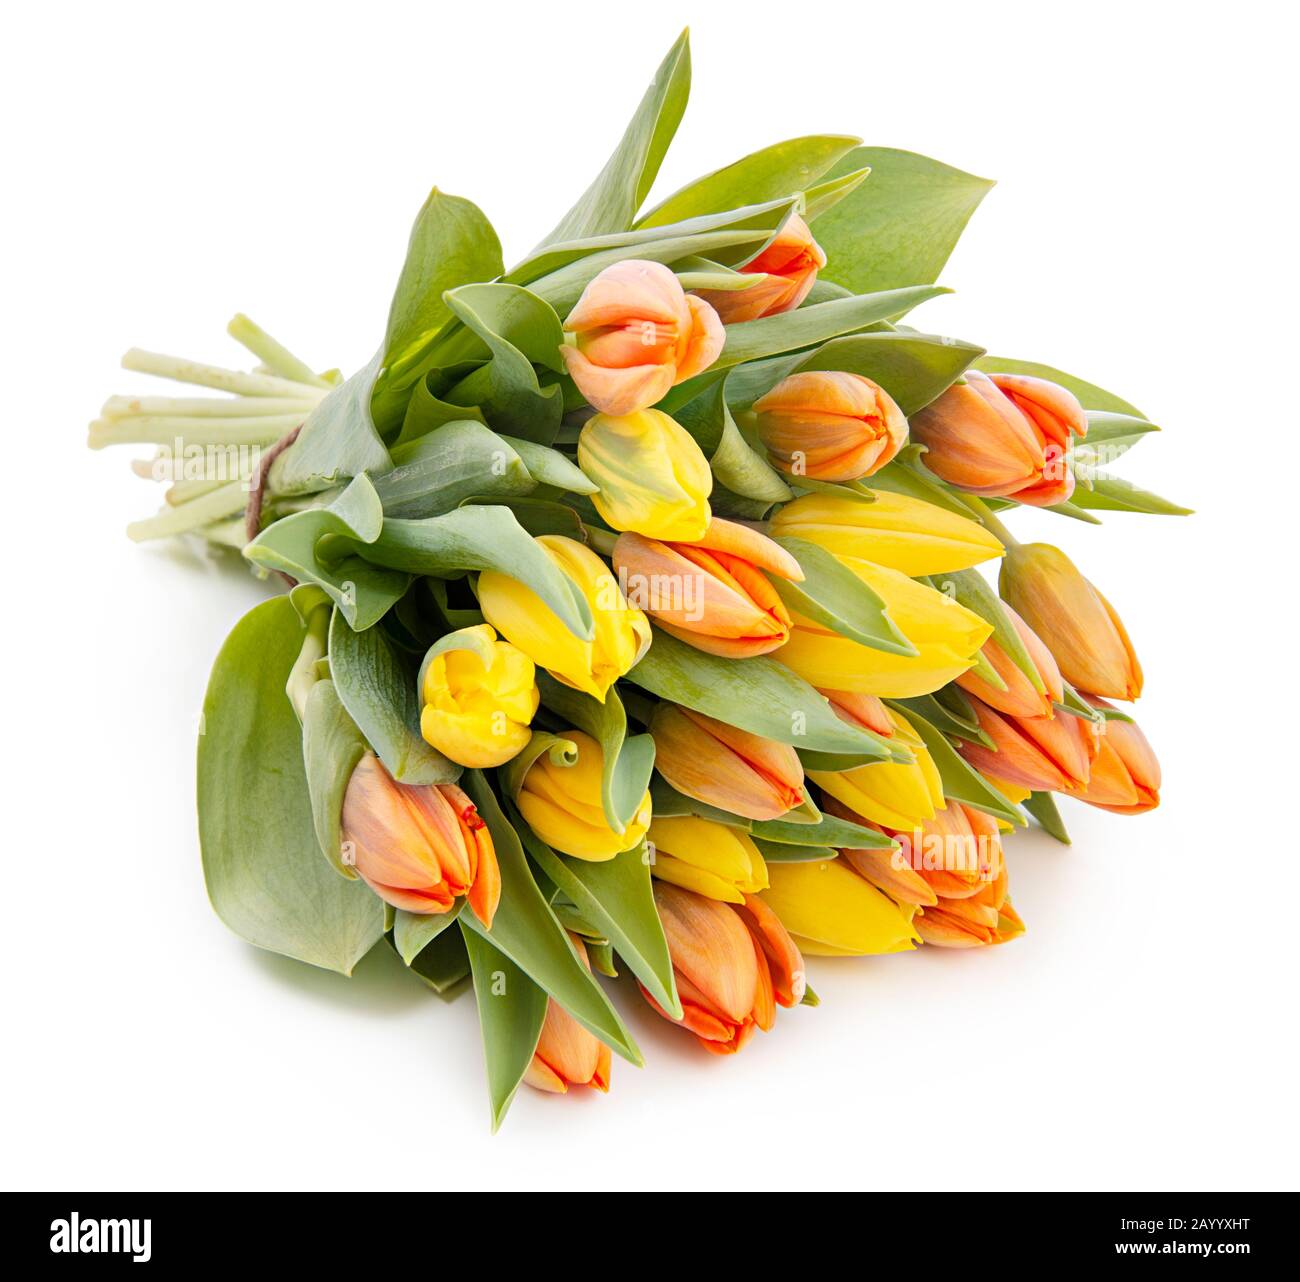 Blumenstrauß aus frischen, schönen gelben und roten Tulpen auf weißem Hintergrund Stockfoto